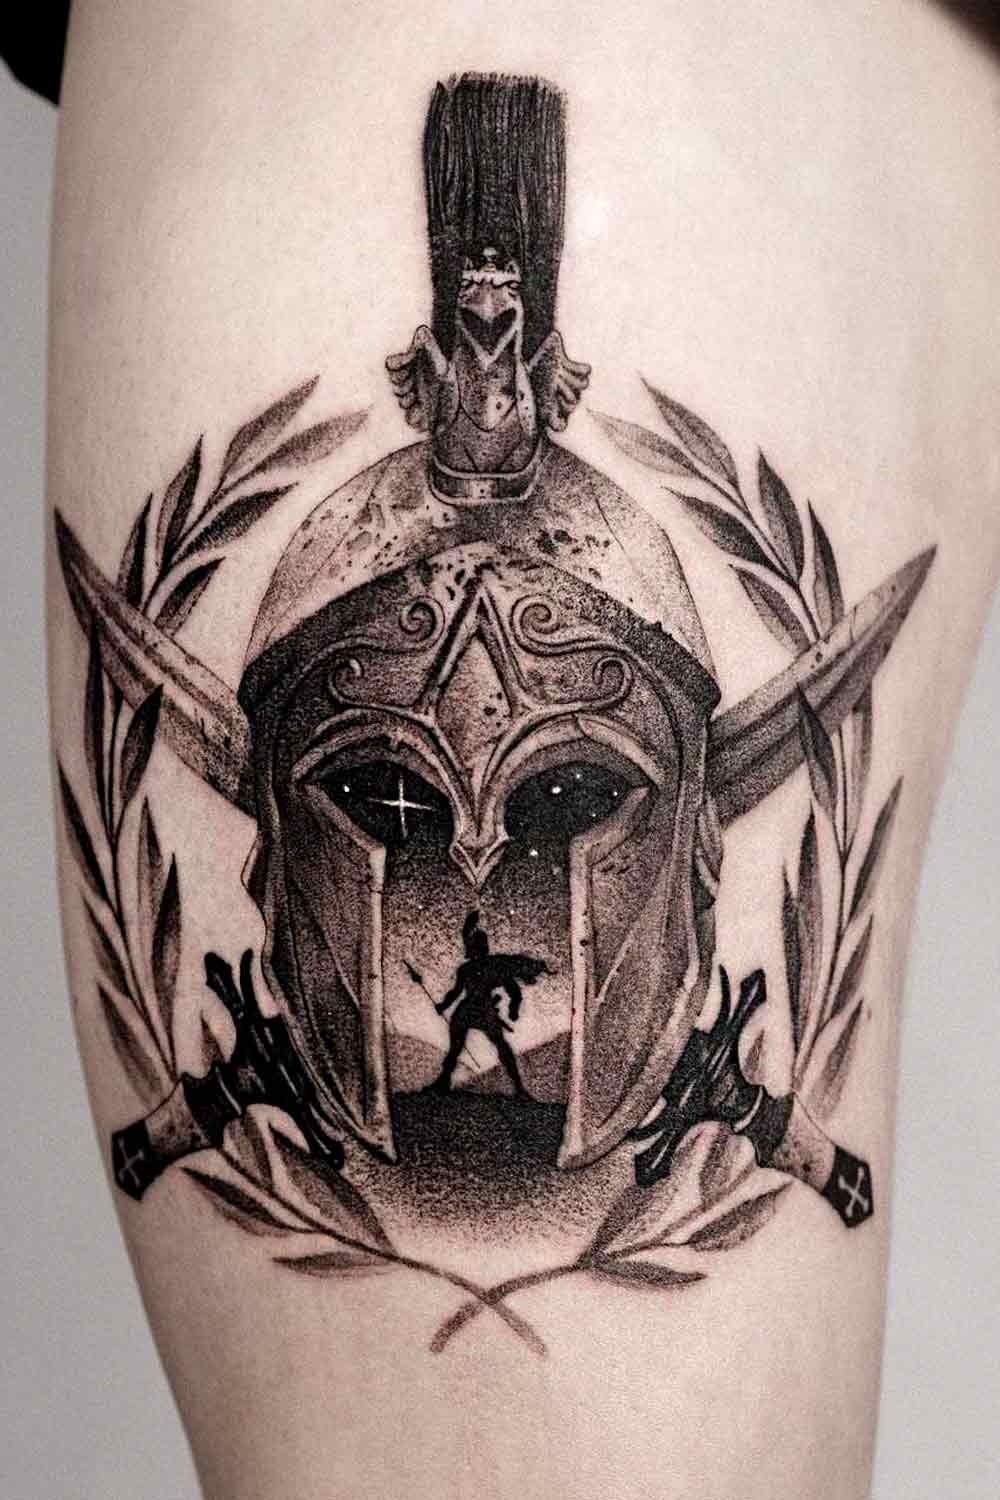 Warrior Tattoo for Men #tattoosformen #tattoosmen #besttattoos #tattoo